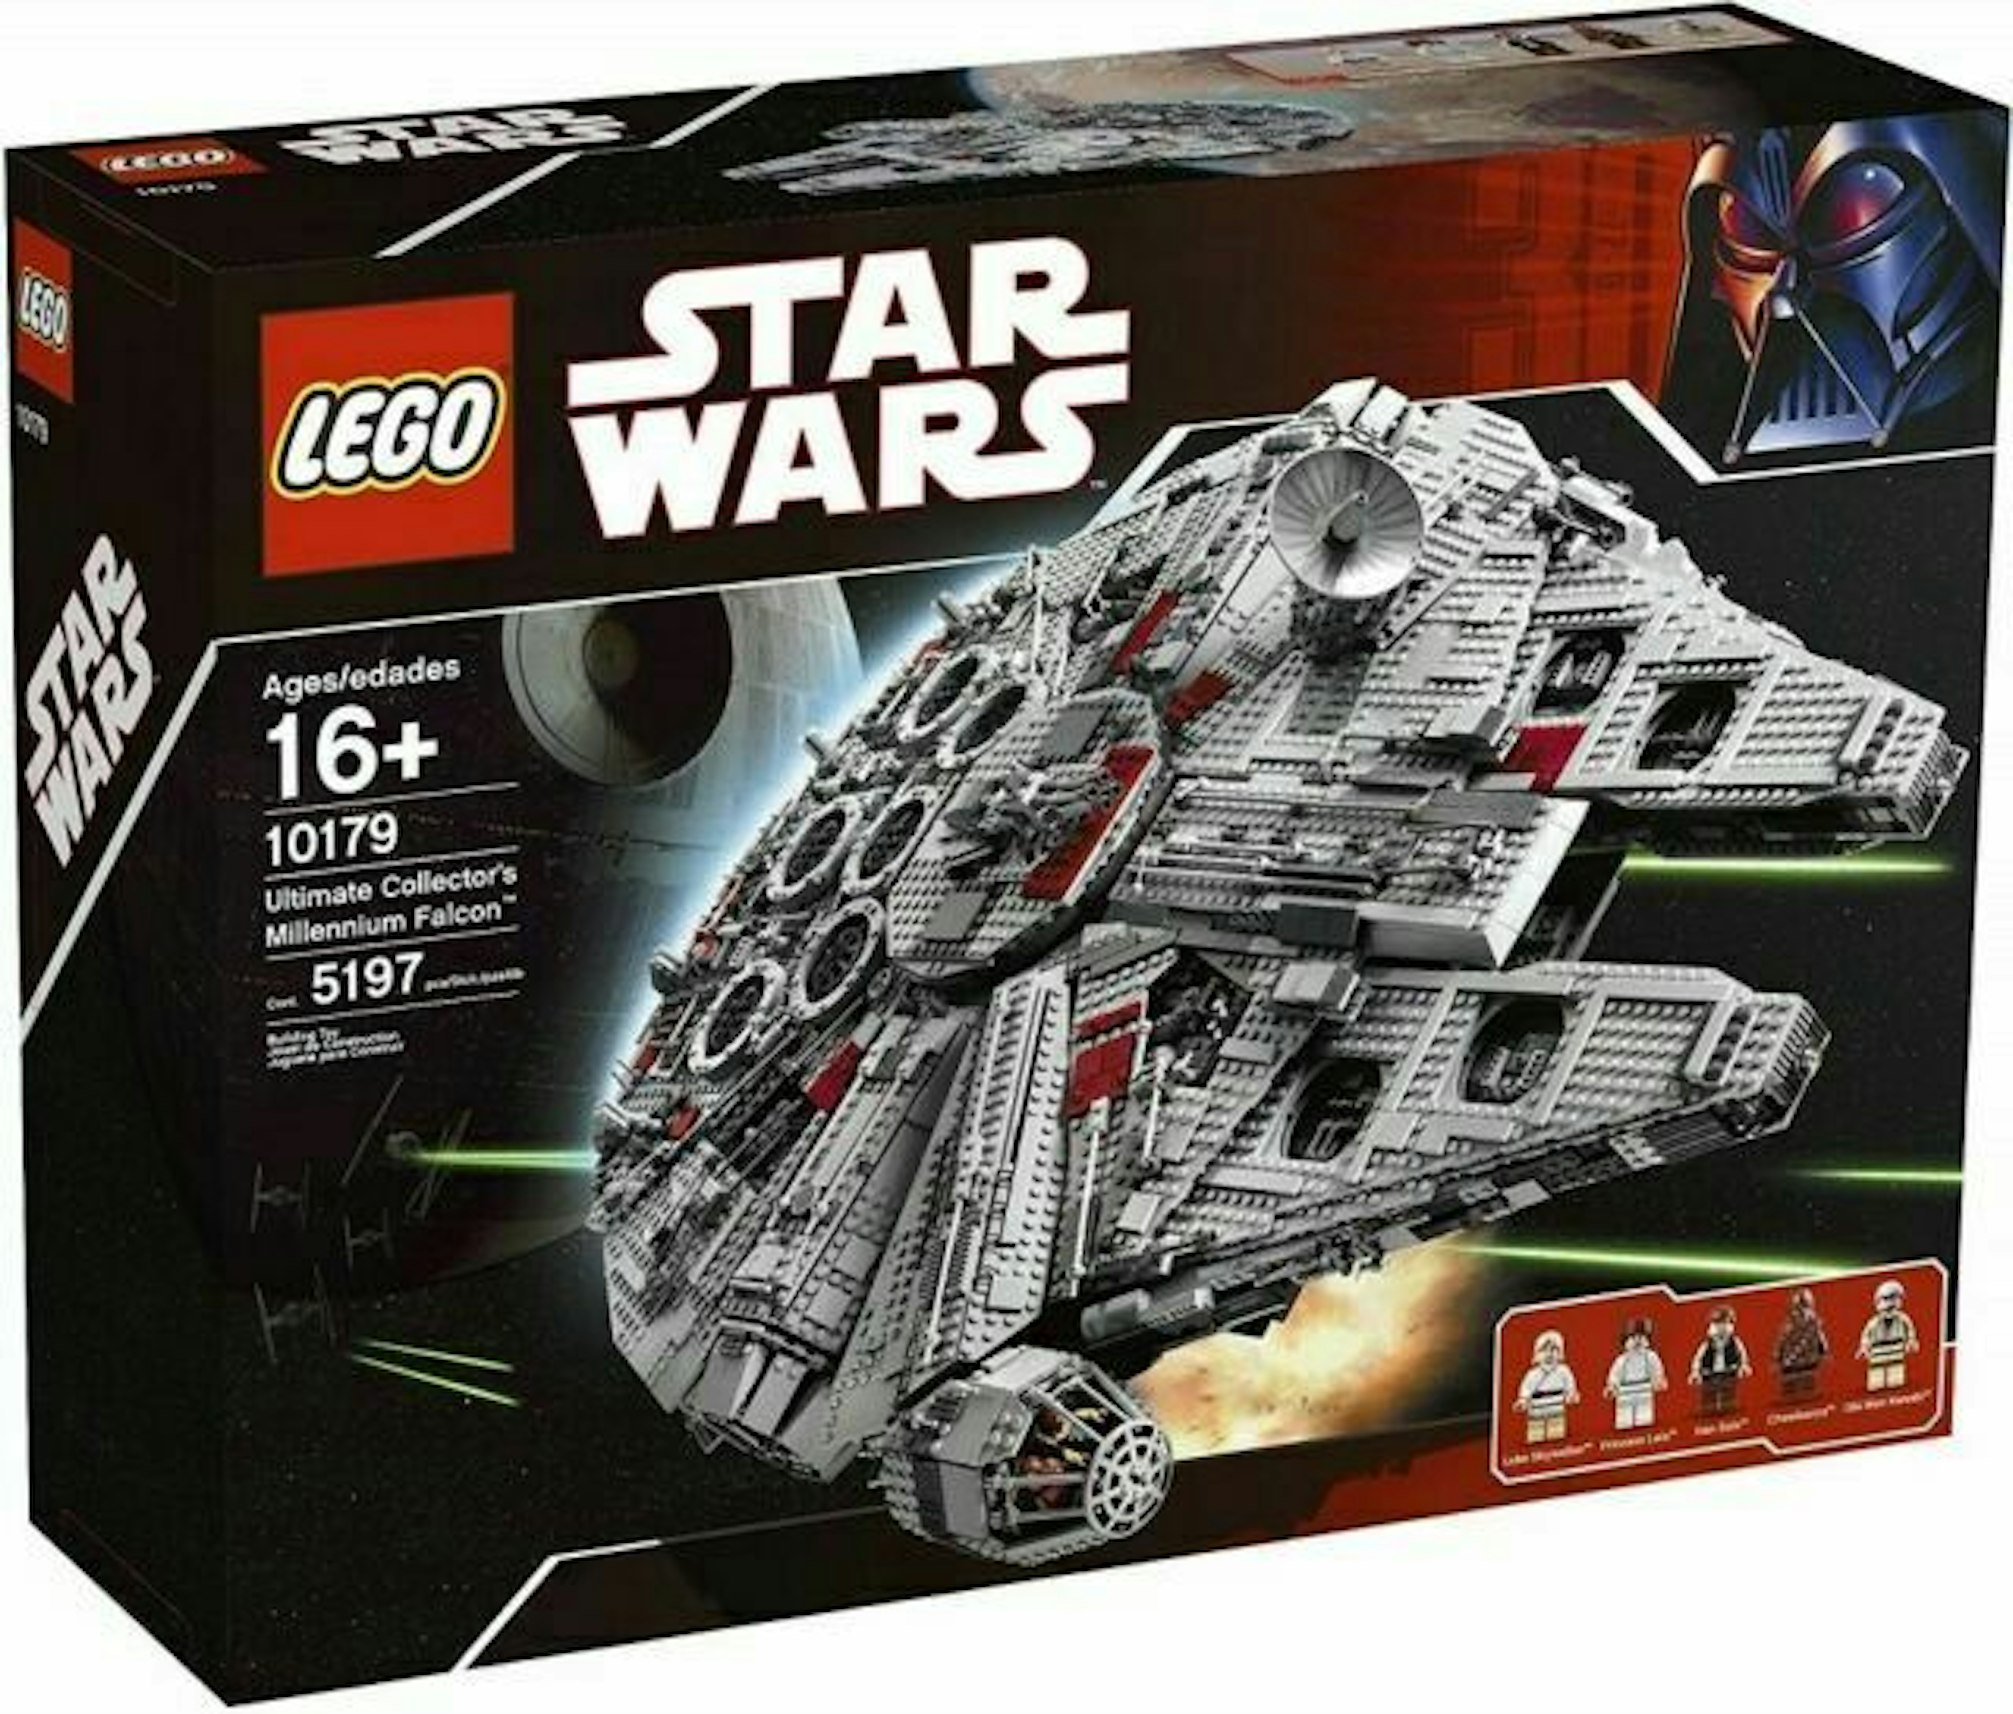 Begrænse at tilføje Problem LEGO Star Wars Ultimate Collector's Millennium Falcon Set 10179 - JP